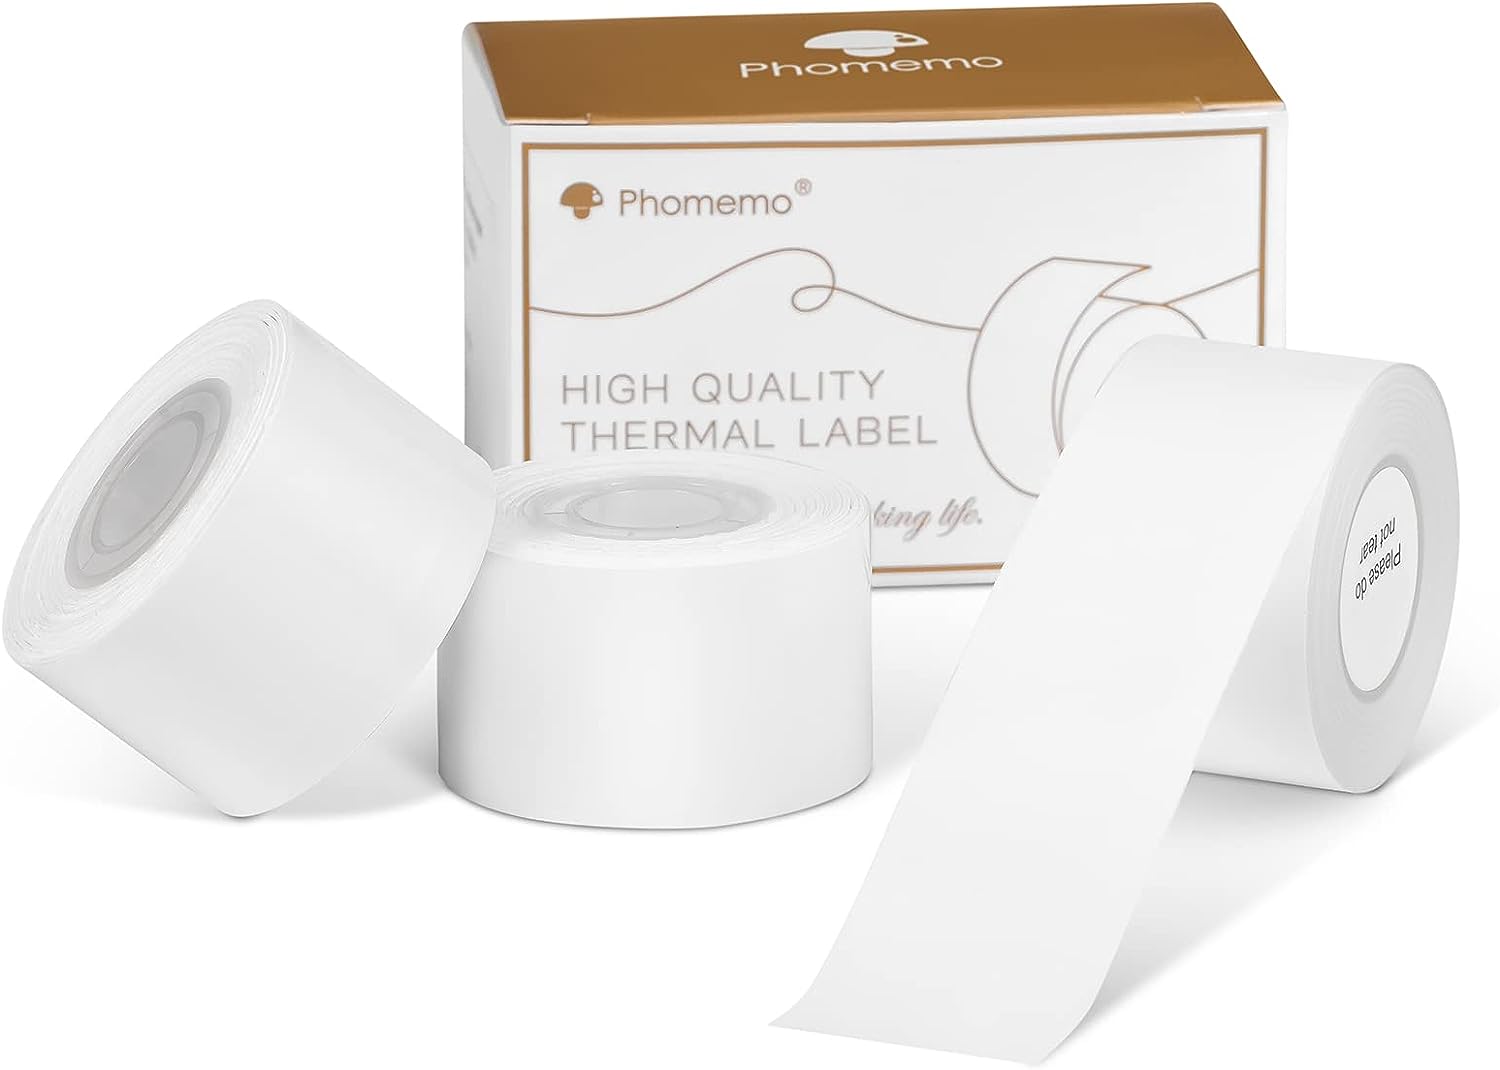 Phomemo D50 ラベルプリンタ 専用テープ ホワイト連続ラベル ラベルシール 純正 感熱ロール紙 ラベルシール 幅24mmx6m 3巻 手書き/値札/宛名/重量/番号/に適用 防水、耐油、耐摩耗性 Android/IOS対応